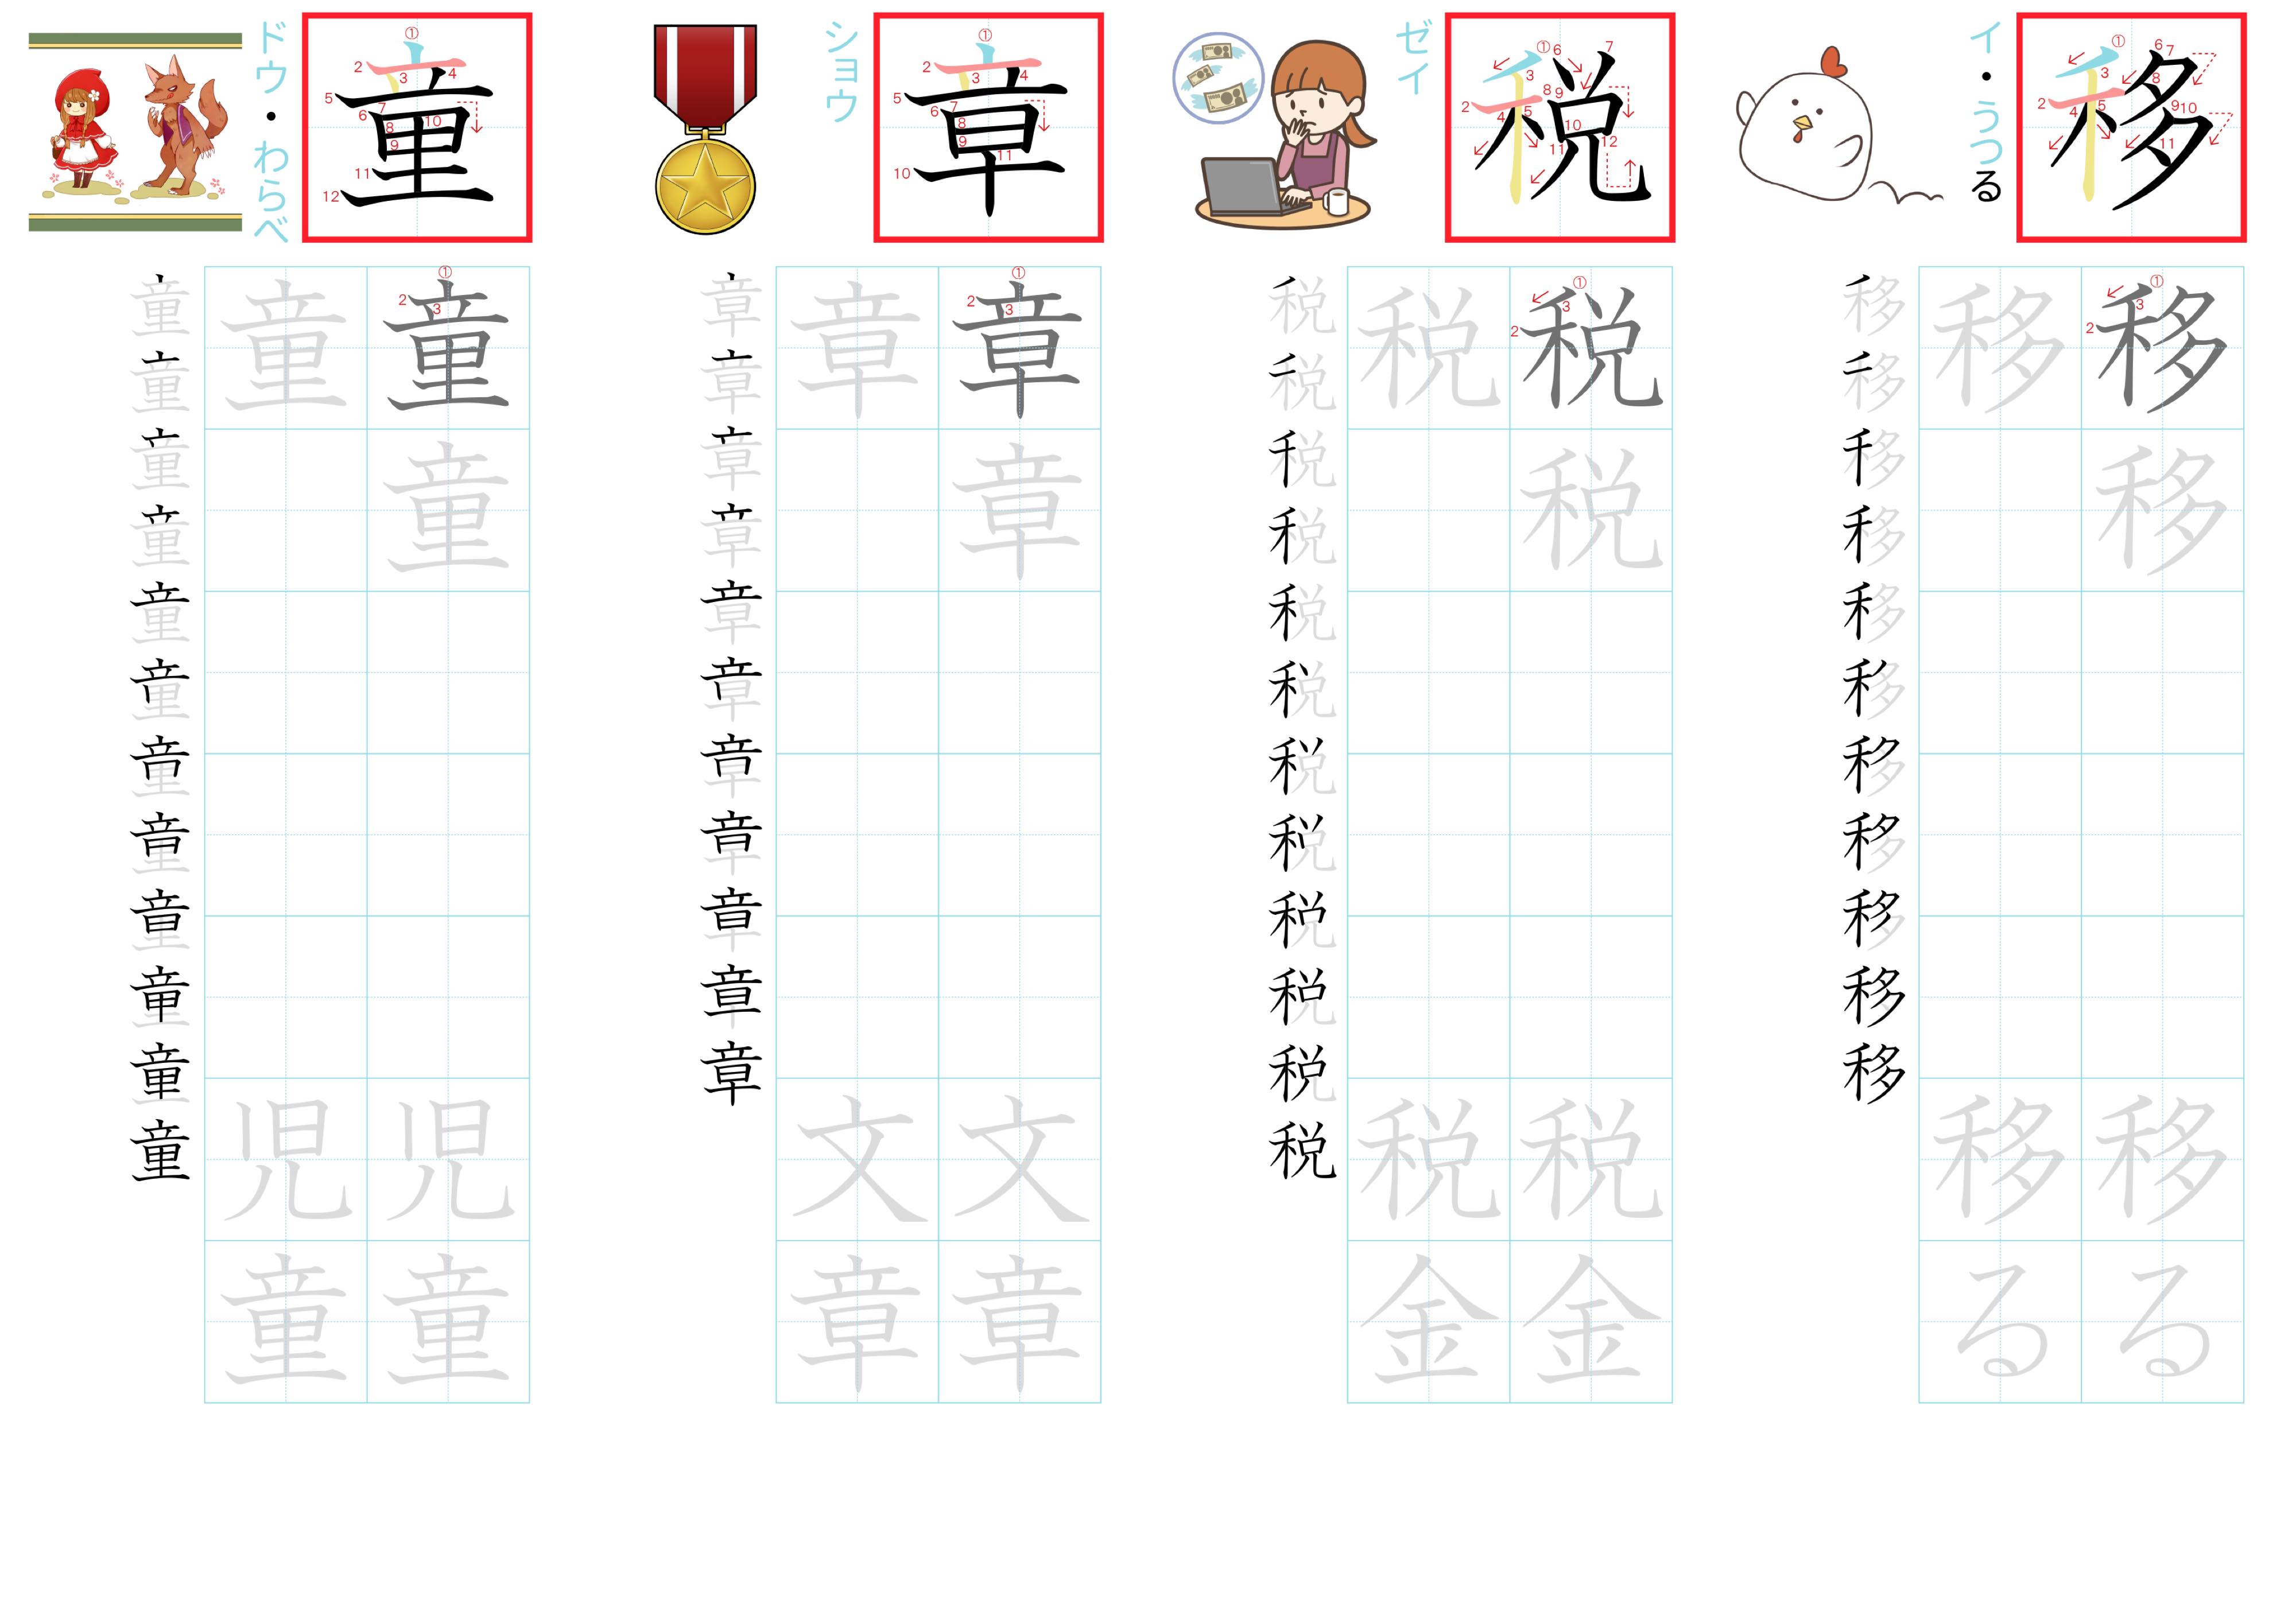 kanji-practice-card-n2-japanese-214